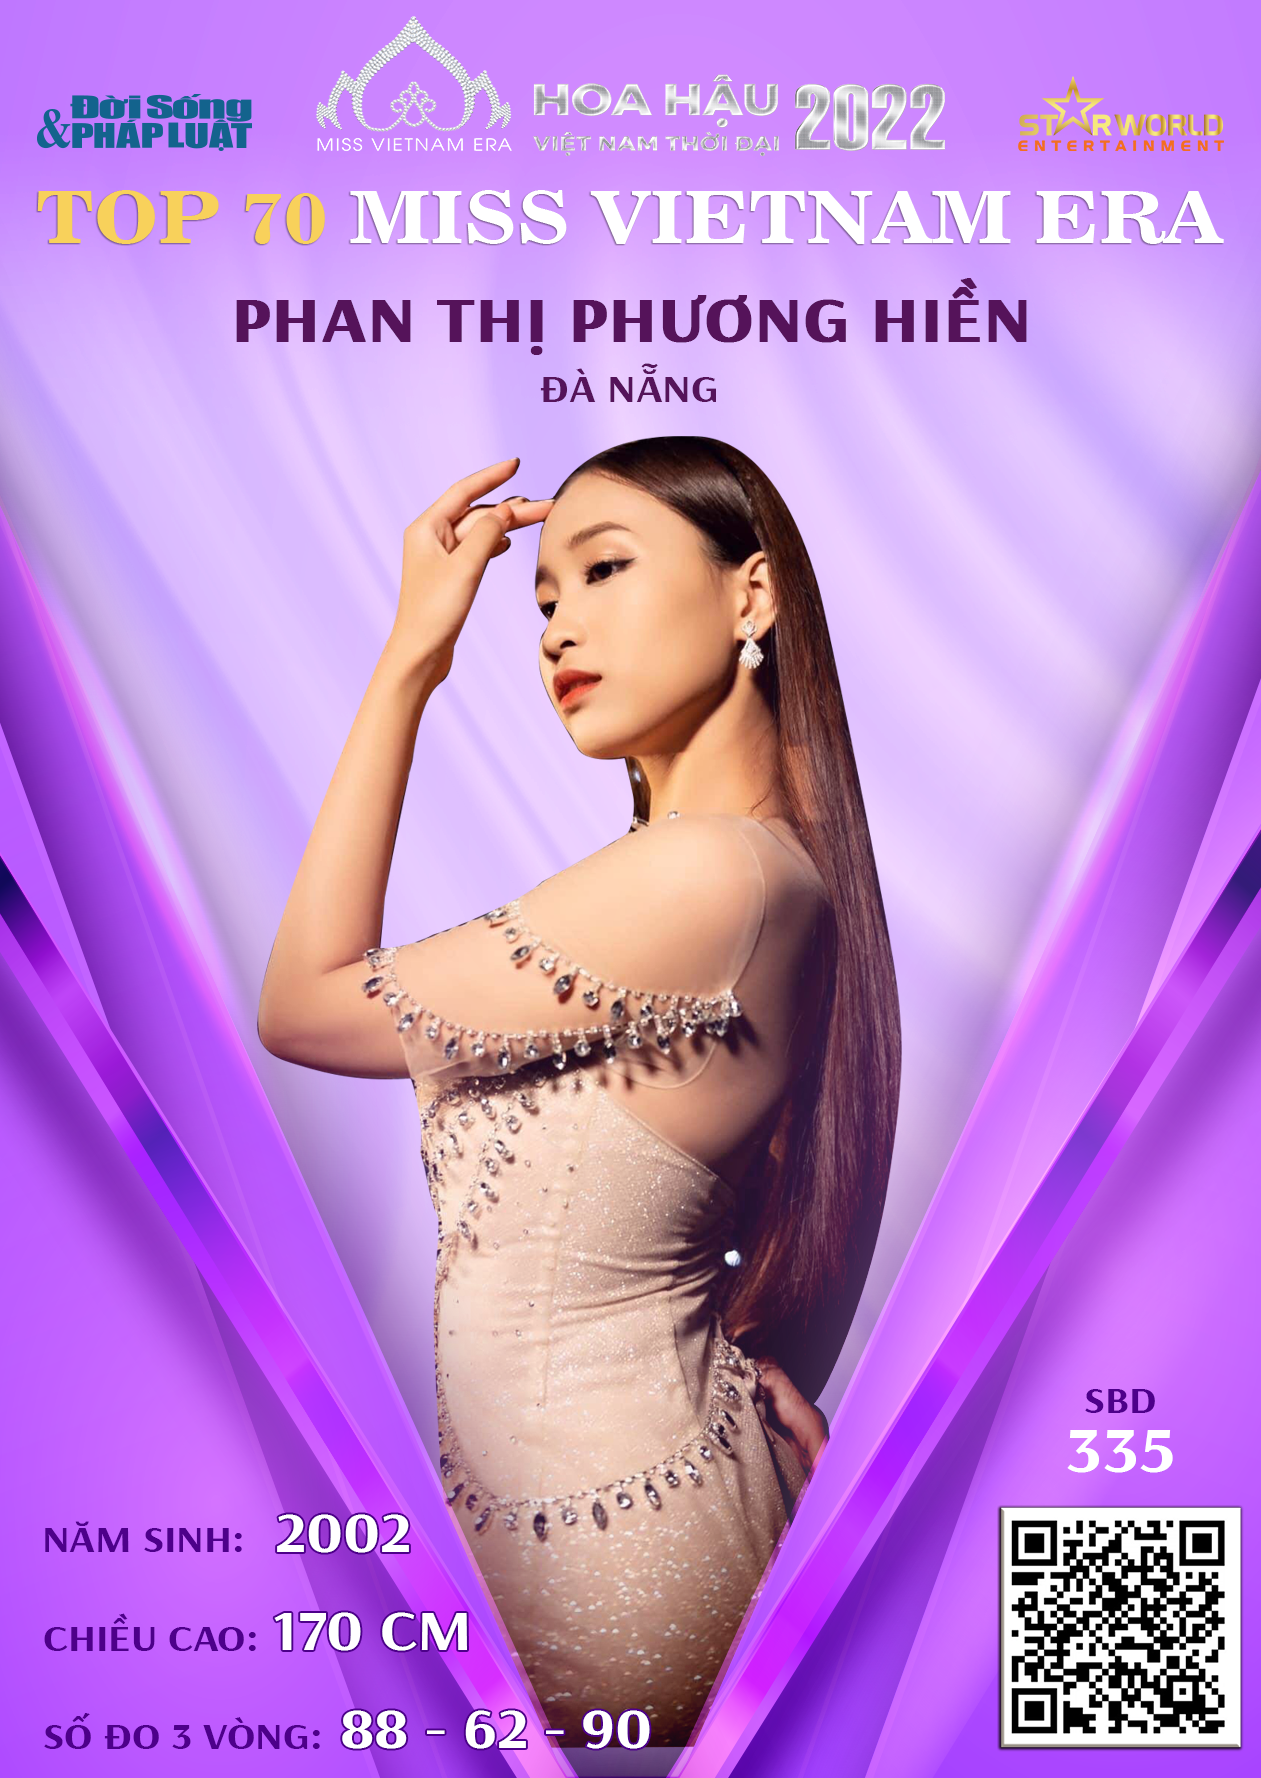 57-phan-thi-phuong-hien-sbd-335-1660991712.png